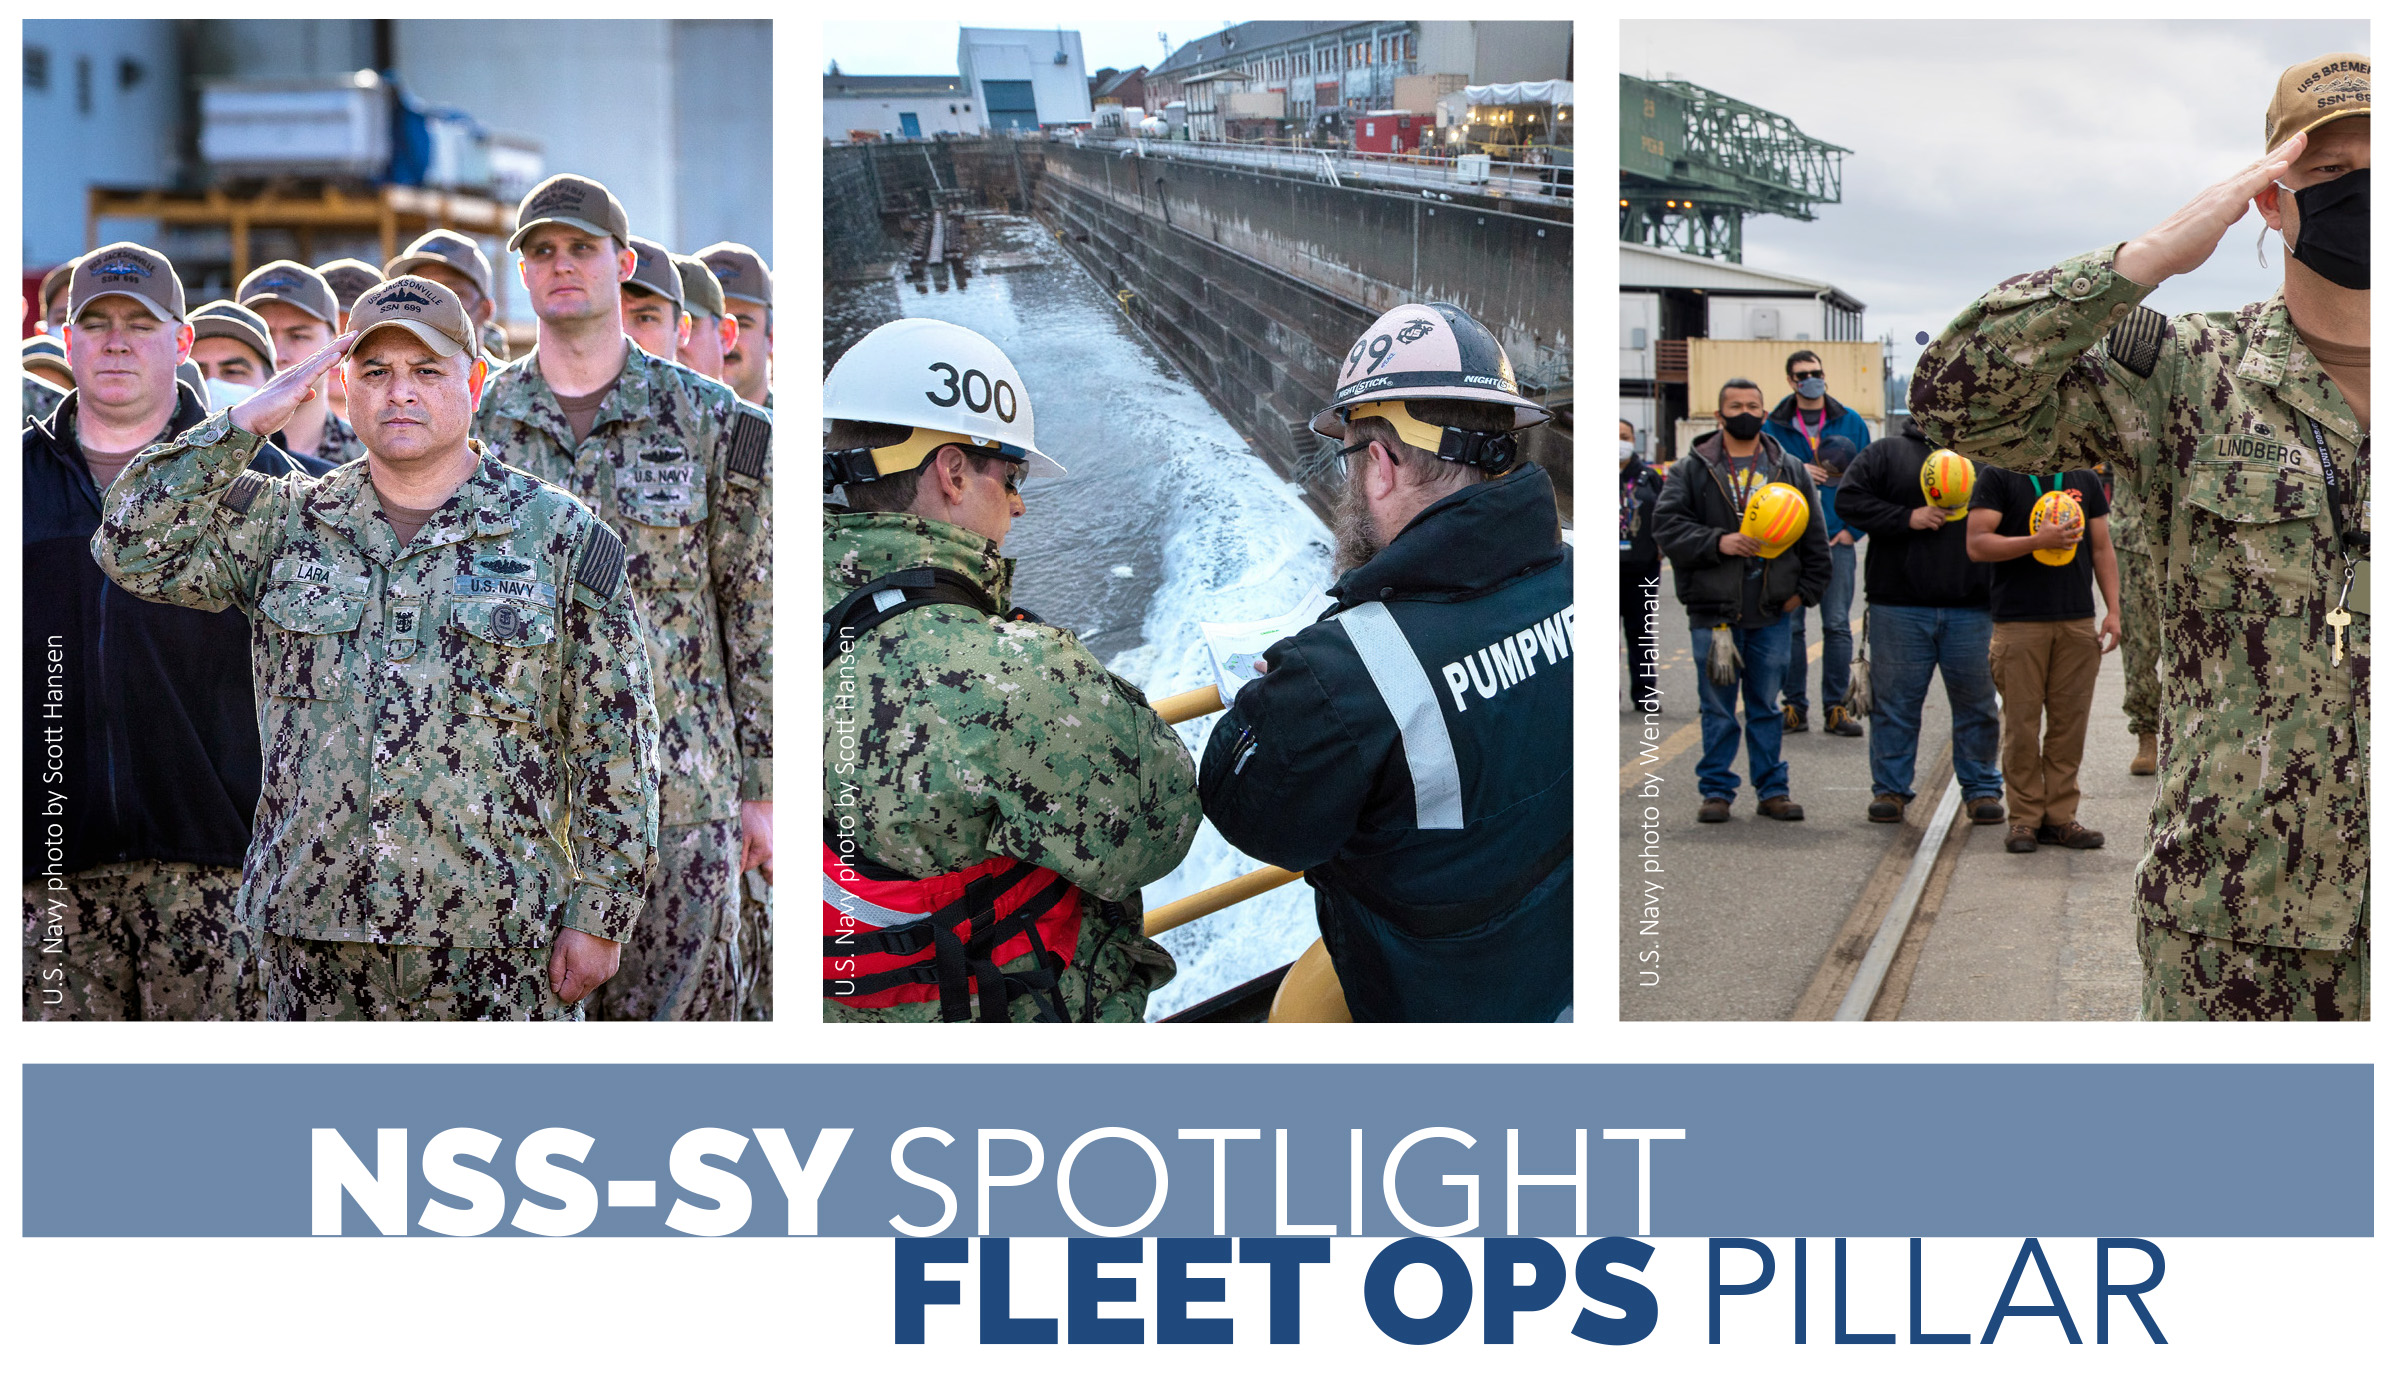 nss-sy-spotlight-fleet-ops-pillar-graphic